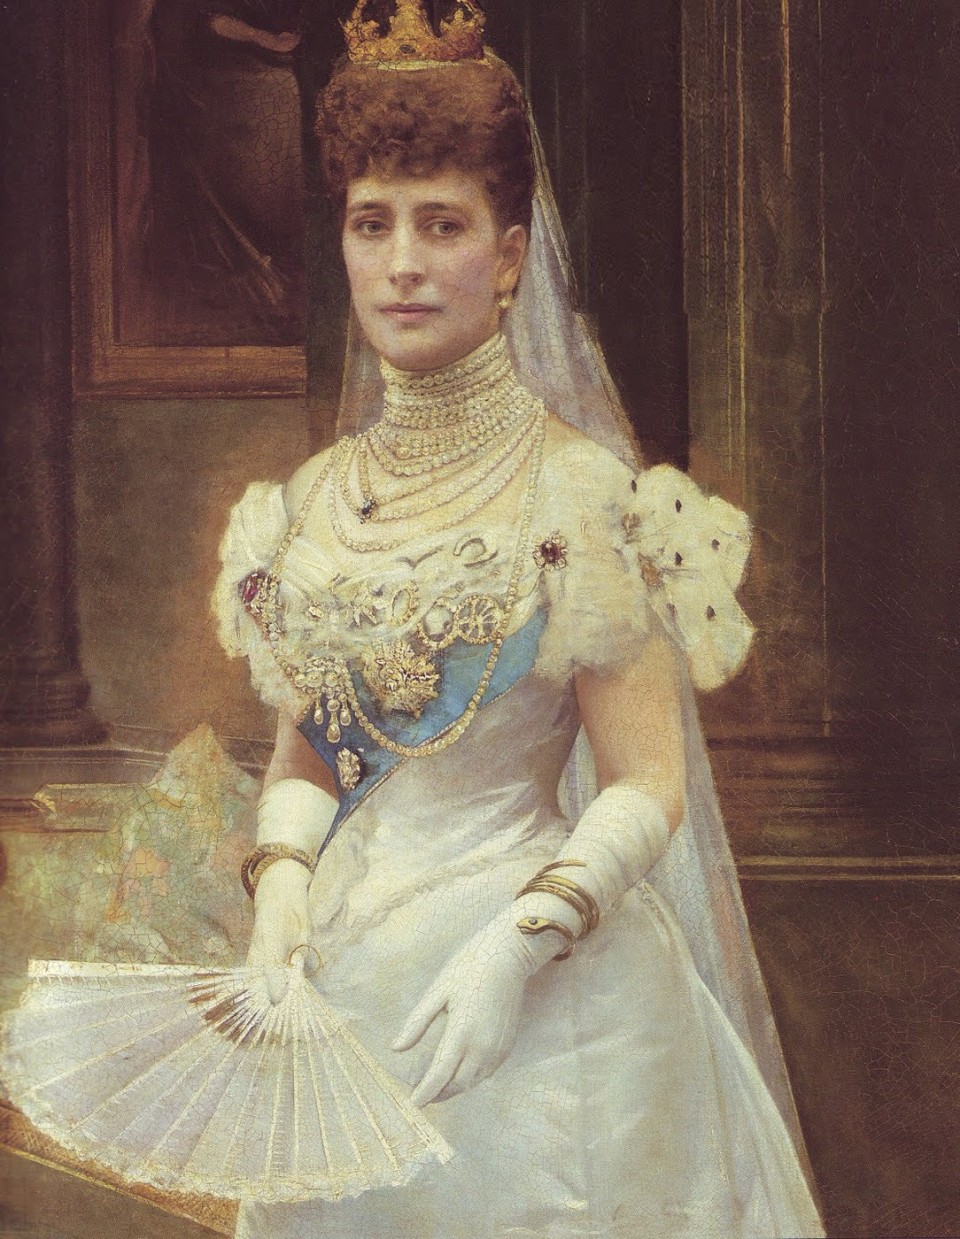 Portrait of Queen Alexandra and her favoured serpent bracelet